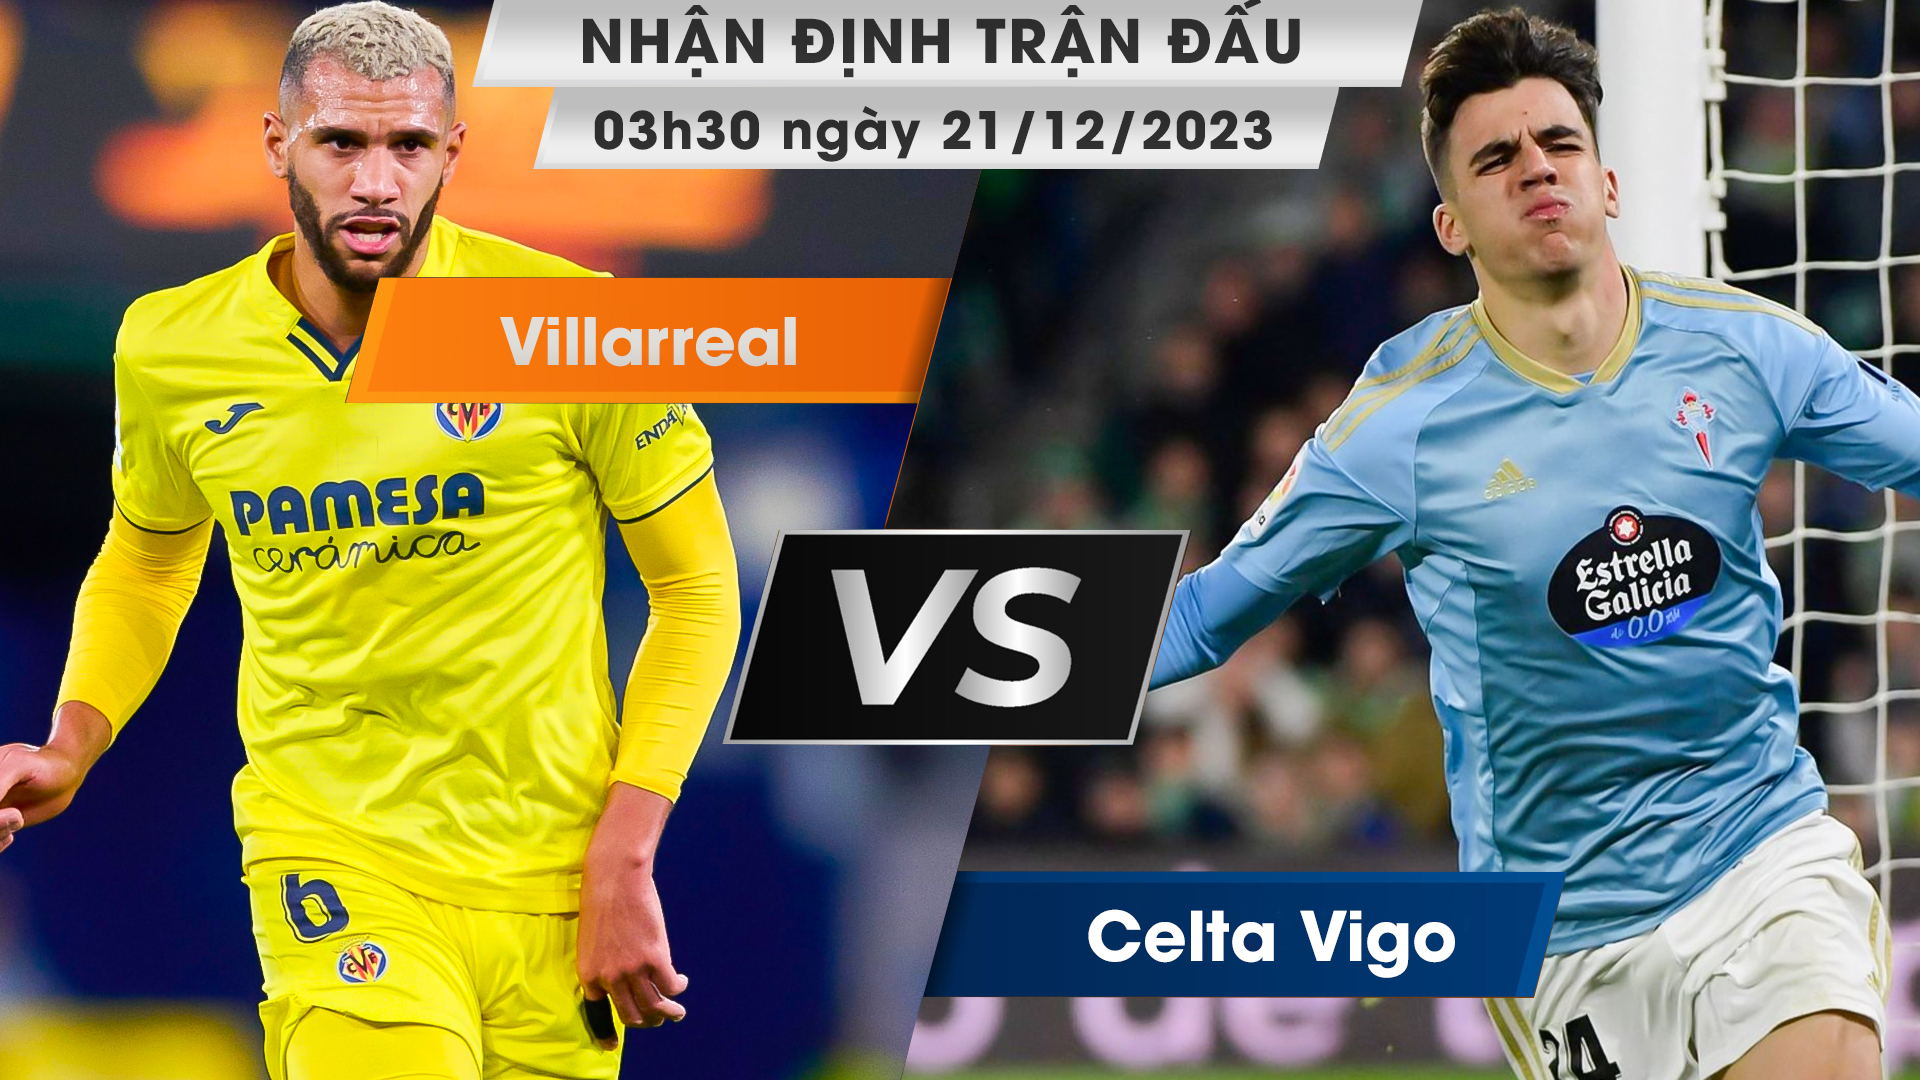 Nhận định, dự đoán Villarreal vs Celta Vigo, 03h30 ngày 21/12/2023